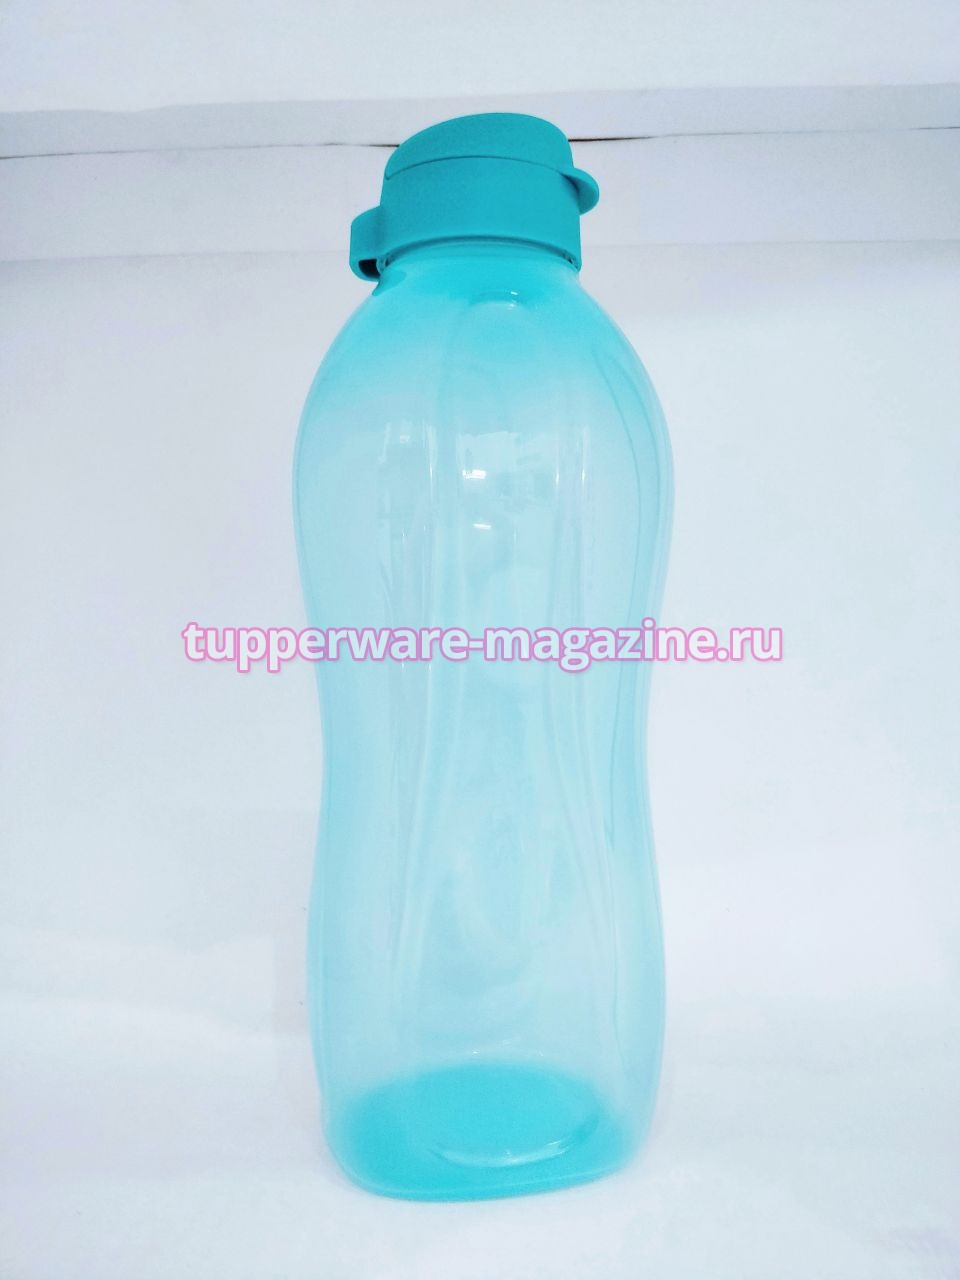 Эко-бутылка 2 л с клапаном в голубом цвете